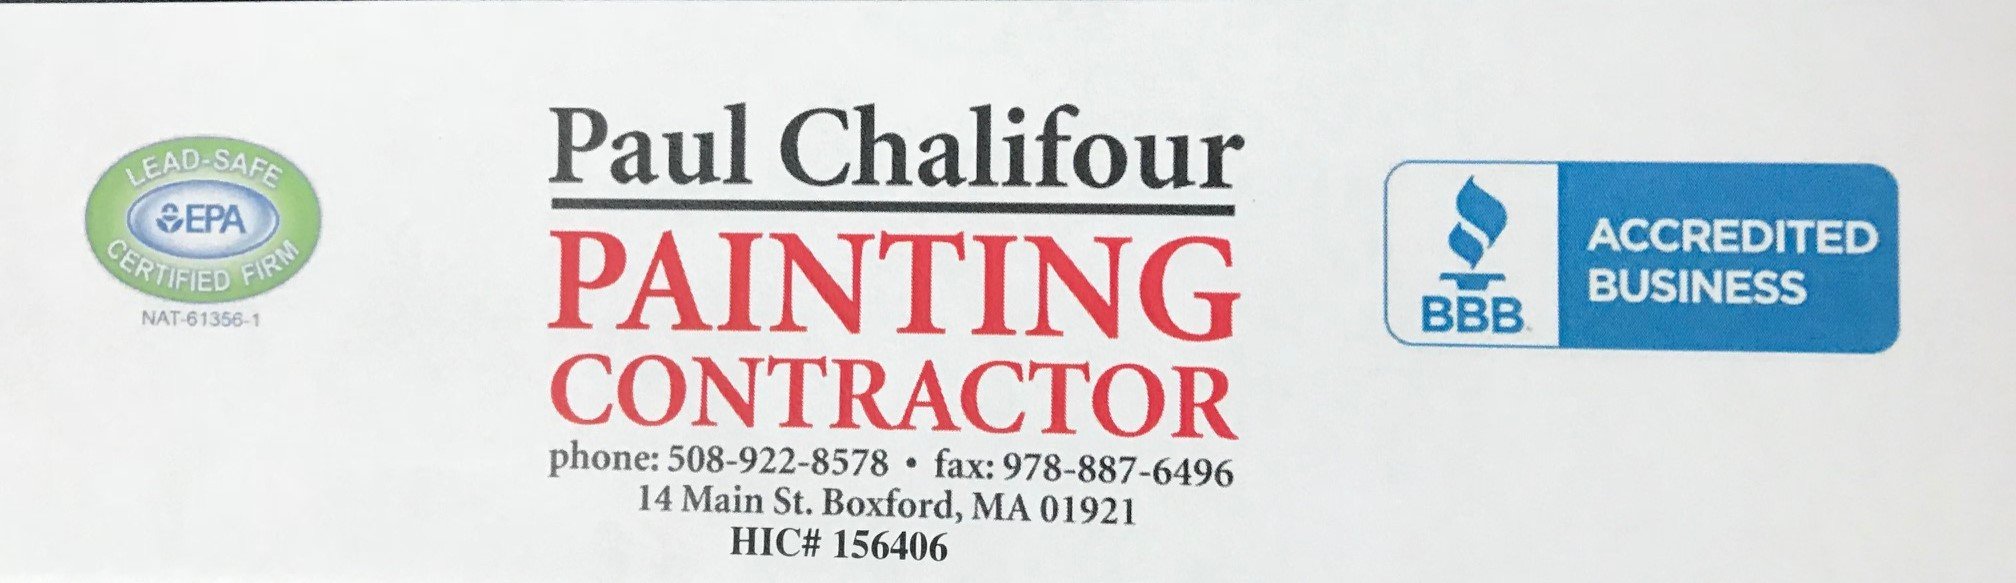 Paul Chalifour Jr Painting Contractor Logo